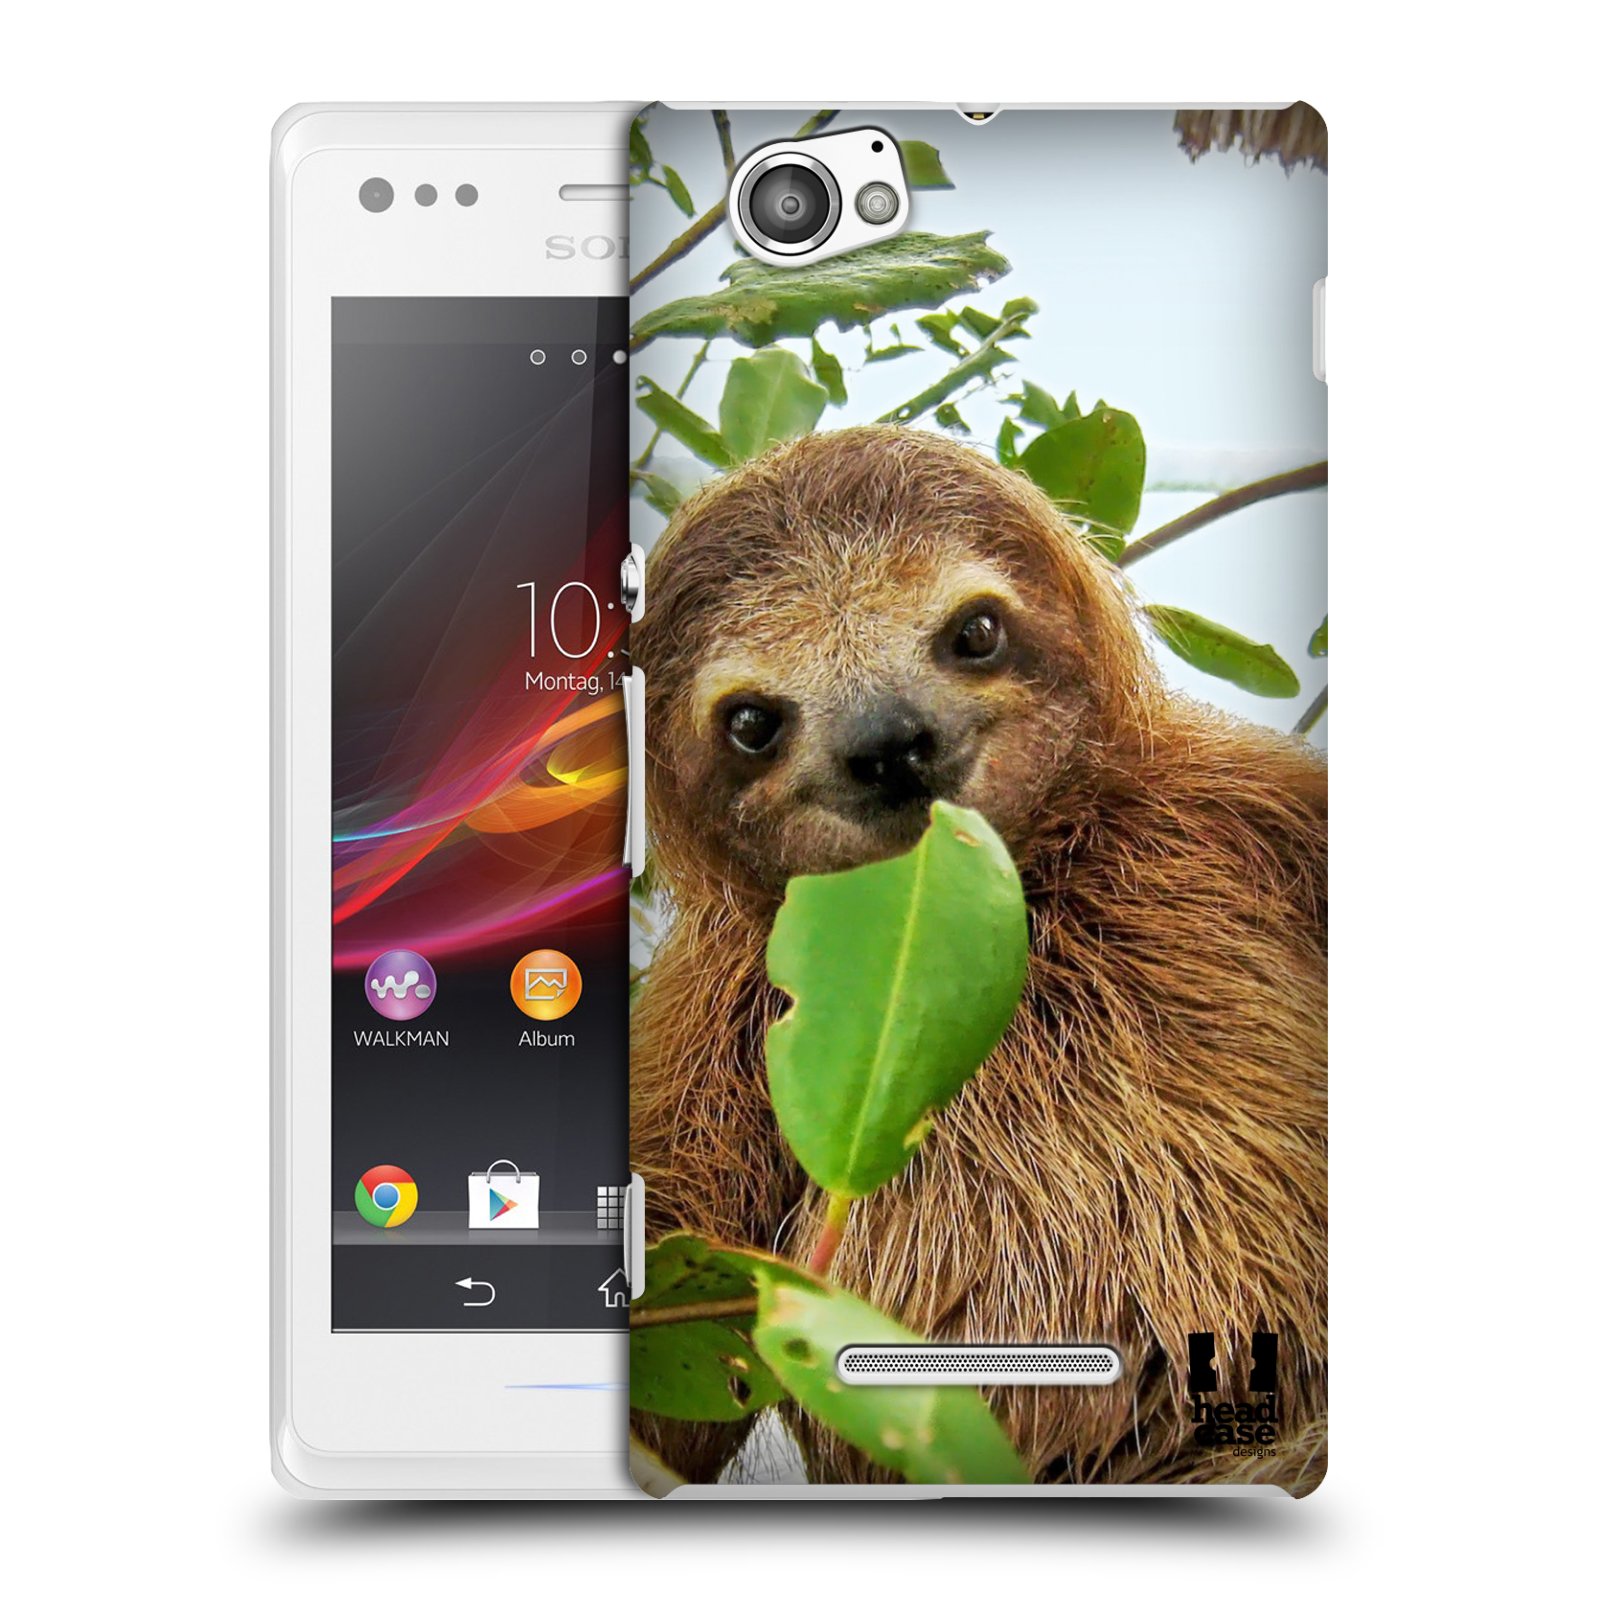 HEAD CASE plastový obal na mobil Sony Xperia M vzor slavná zvířata foto lenochod